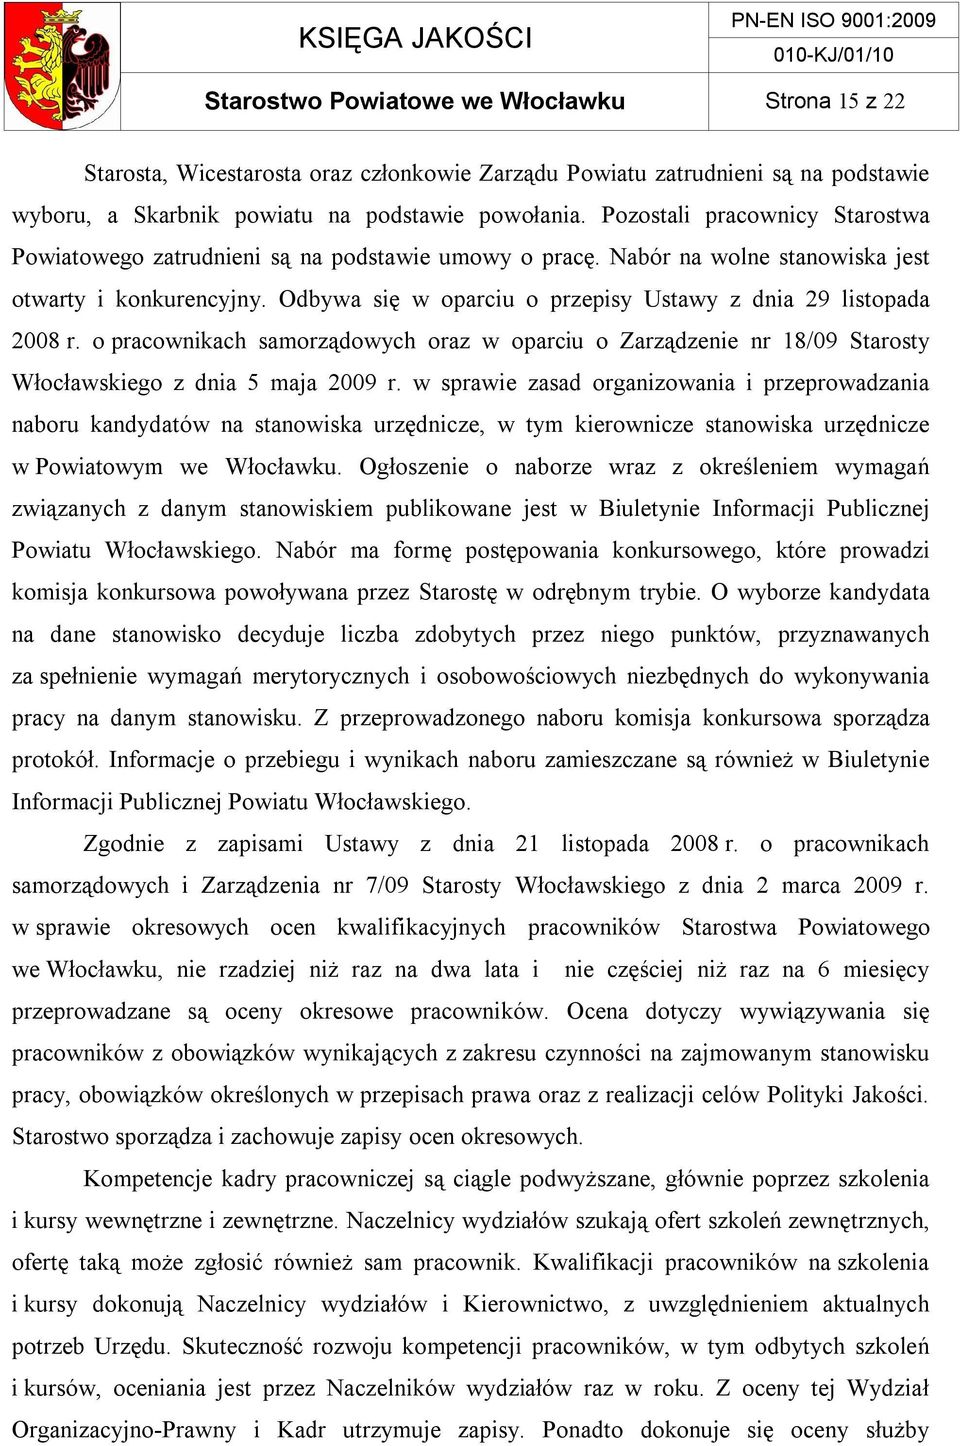 Odbywa się w oparciu o przepisy Ustawy z dnia 29 listopada 2008 r. o pracownikach samorządowych oraz w oparciu o Zarządzenie nr 18/09 Starosty Włocławskiego z dnia 5 maja 2009 r.